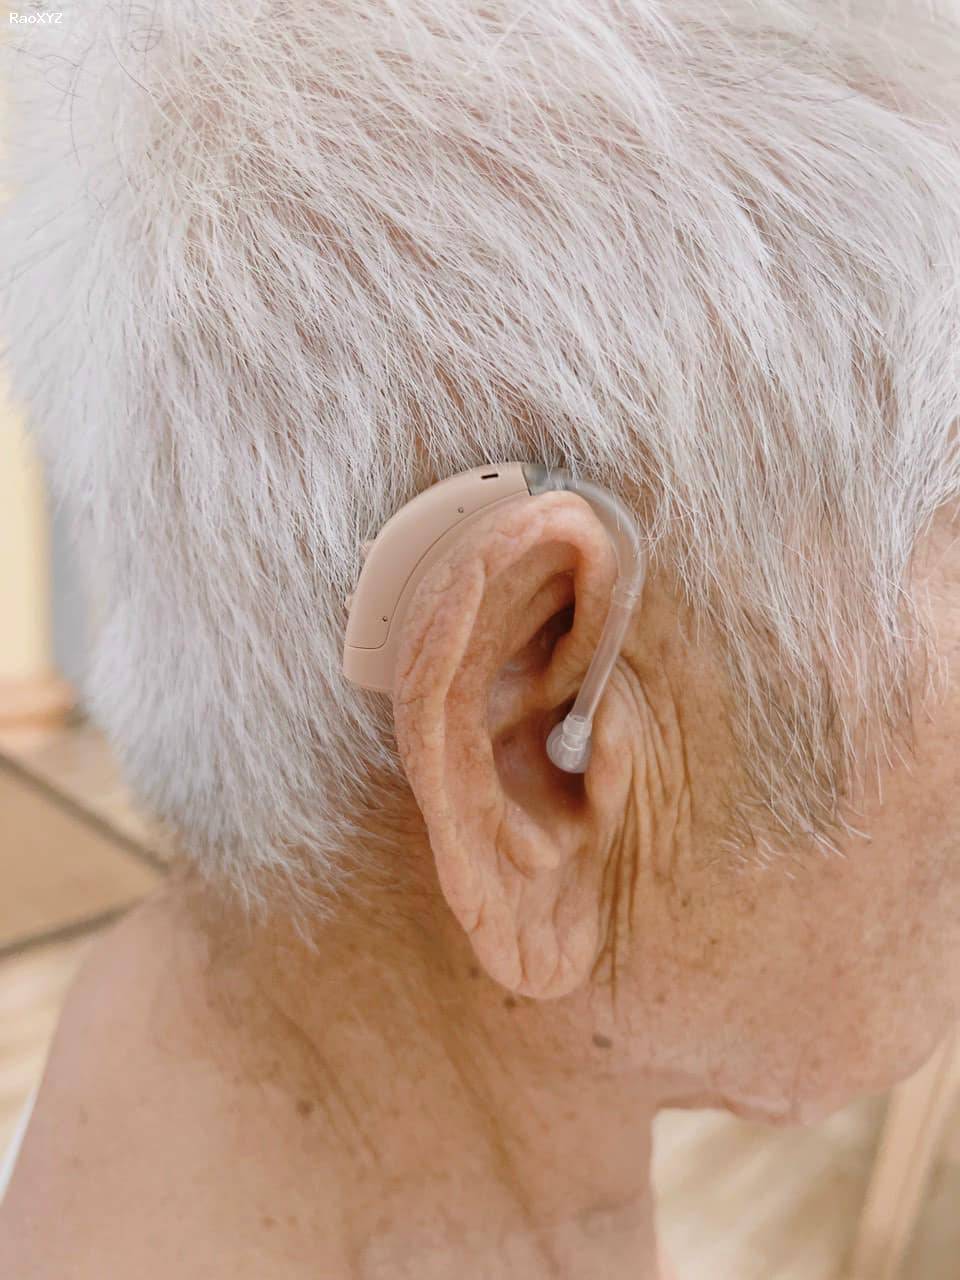 TẠI NHÀ: Đo tai và thử máy trợ thính tại nhà.